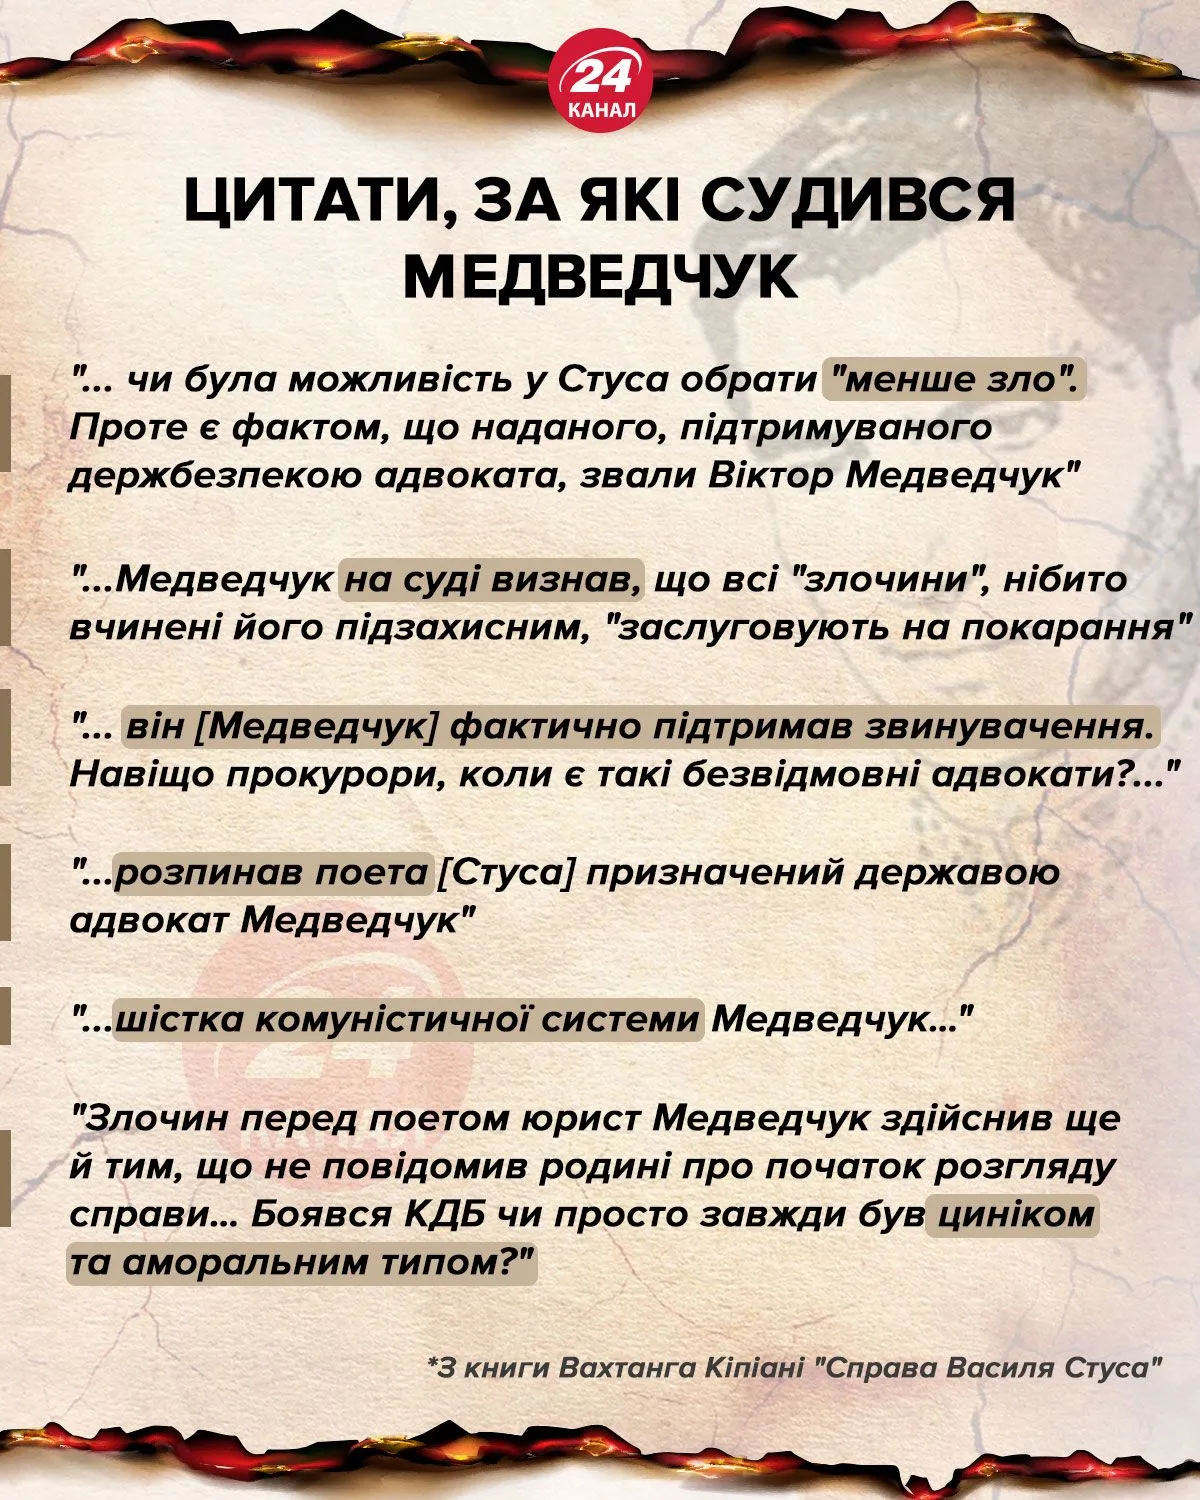 ​Цитаты, за которые судился Медведчук инфографика 24 канал